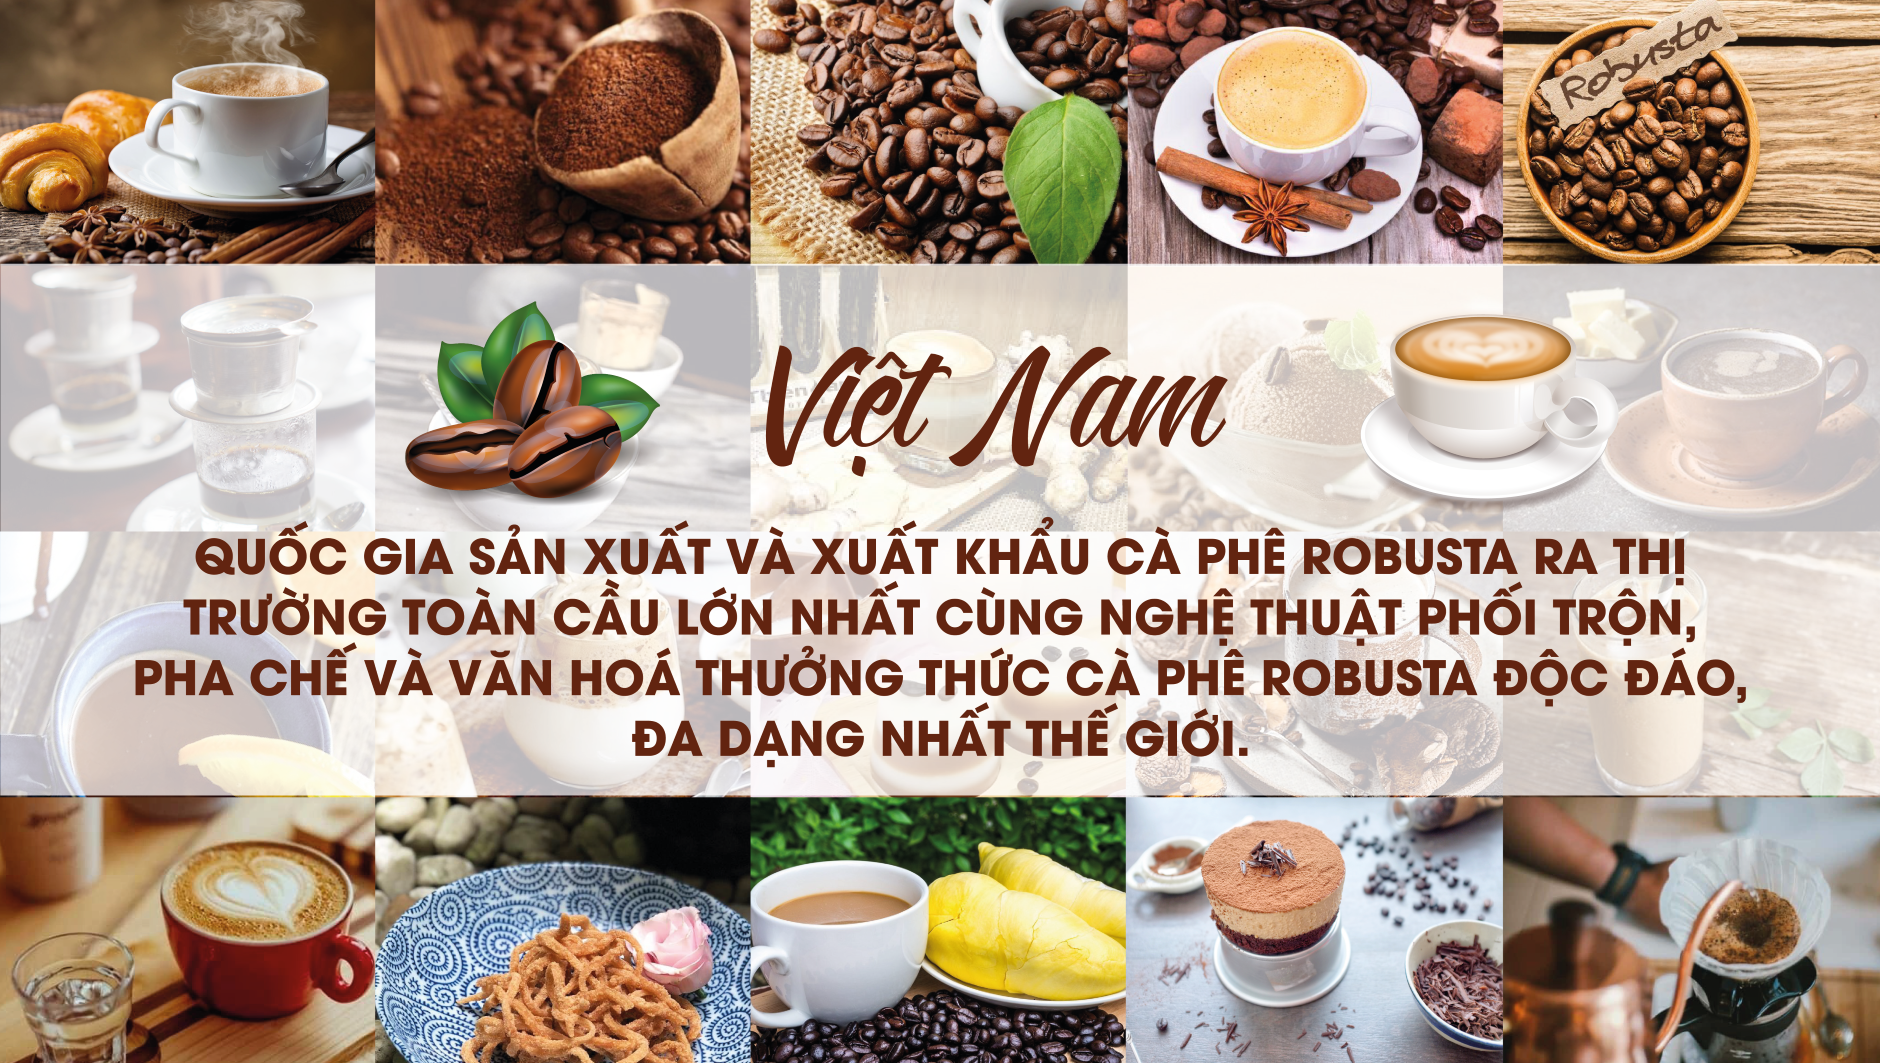 Việt Nam là điểm đến có ẩm thực hấp dẫn nhất châu Á - ảnh 2